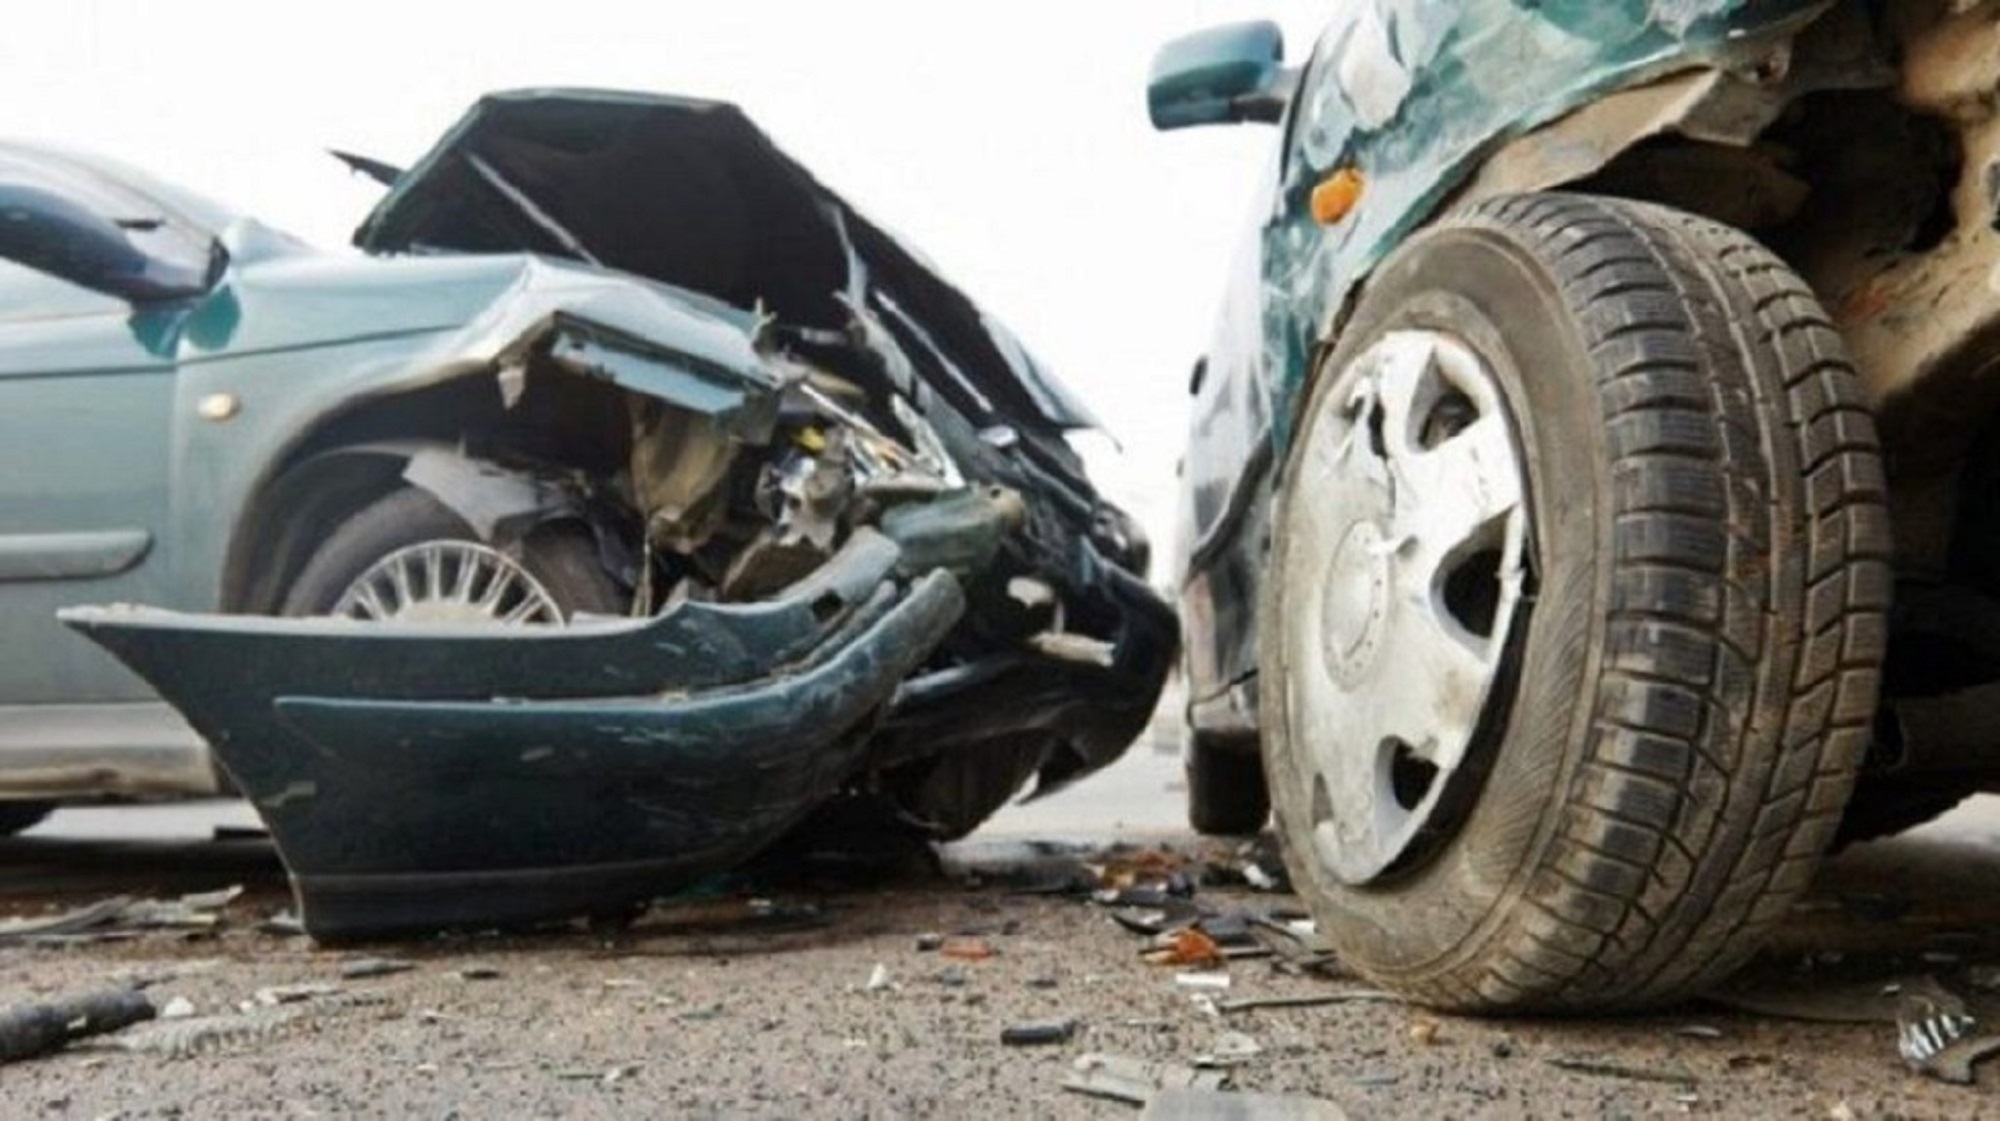 Δύο νεκροί και δύο σοβαρά τραυματίες σε τροχαία δυστυχήματα σε Βριλήσσια και Πέραμα